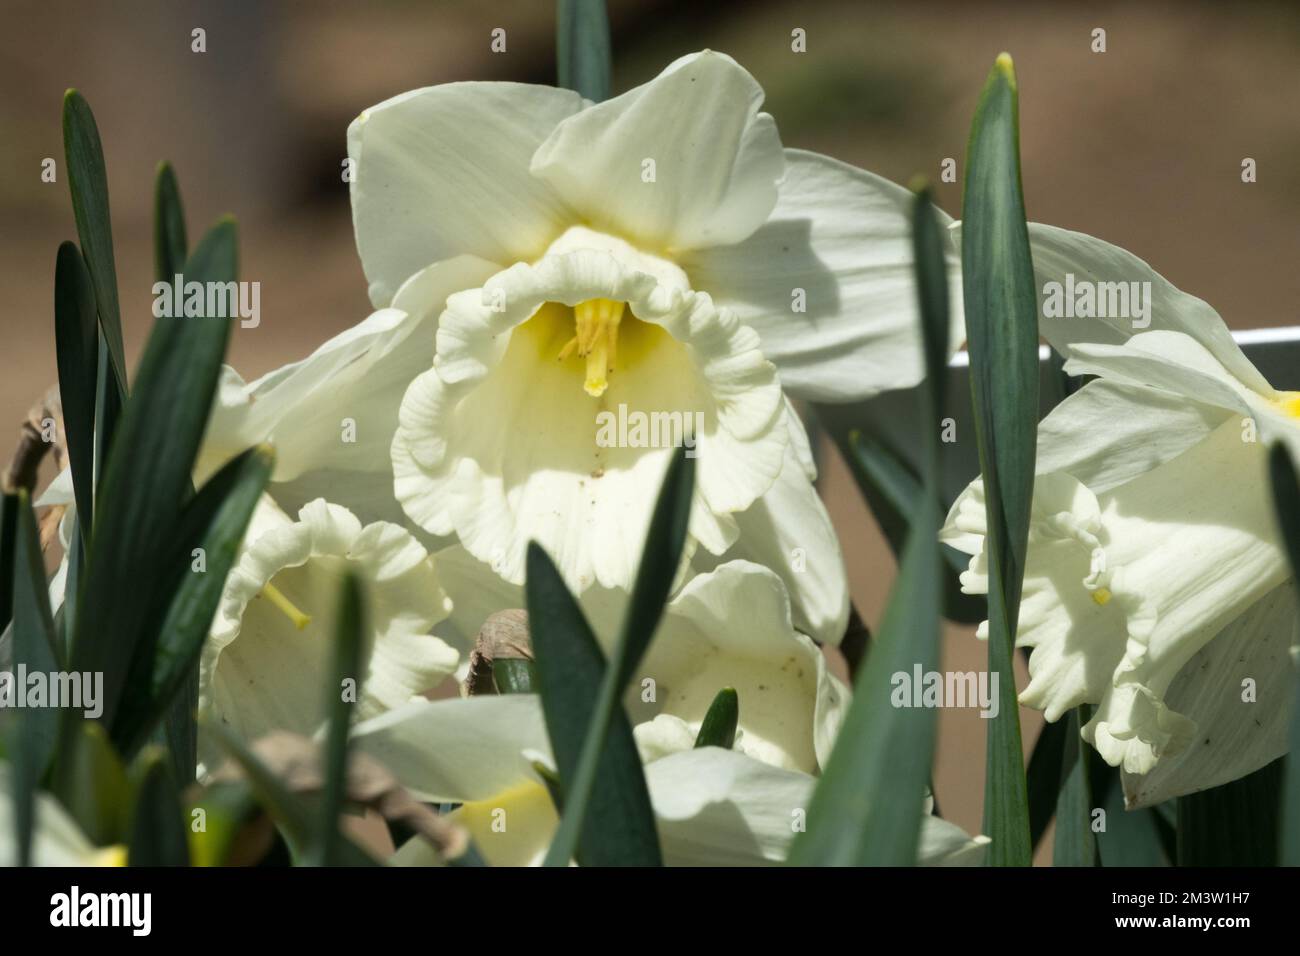 Bianco, Daffodil, Narciso, Fiore, Primavera, Stagione, Tromba Daffodil, fioritura, Daffodils, lunga durata, Bulbo, pianta, Narcissus 'Mount Hood' Foto Stock